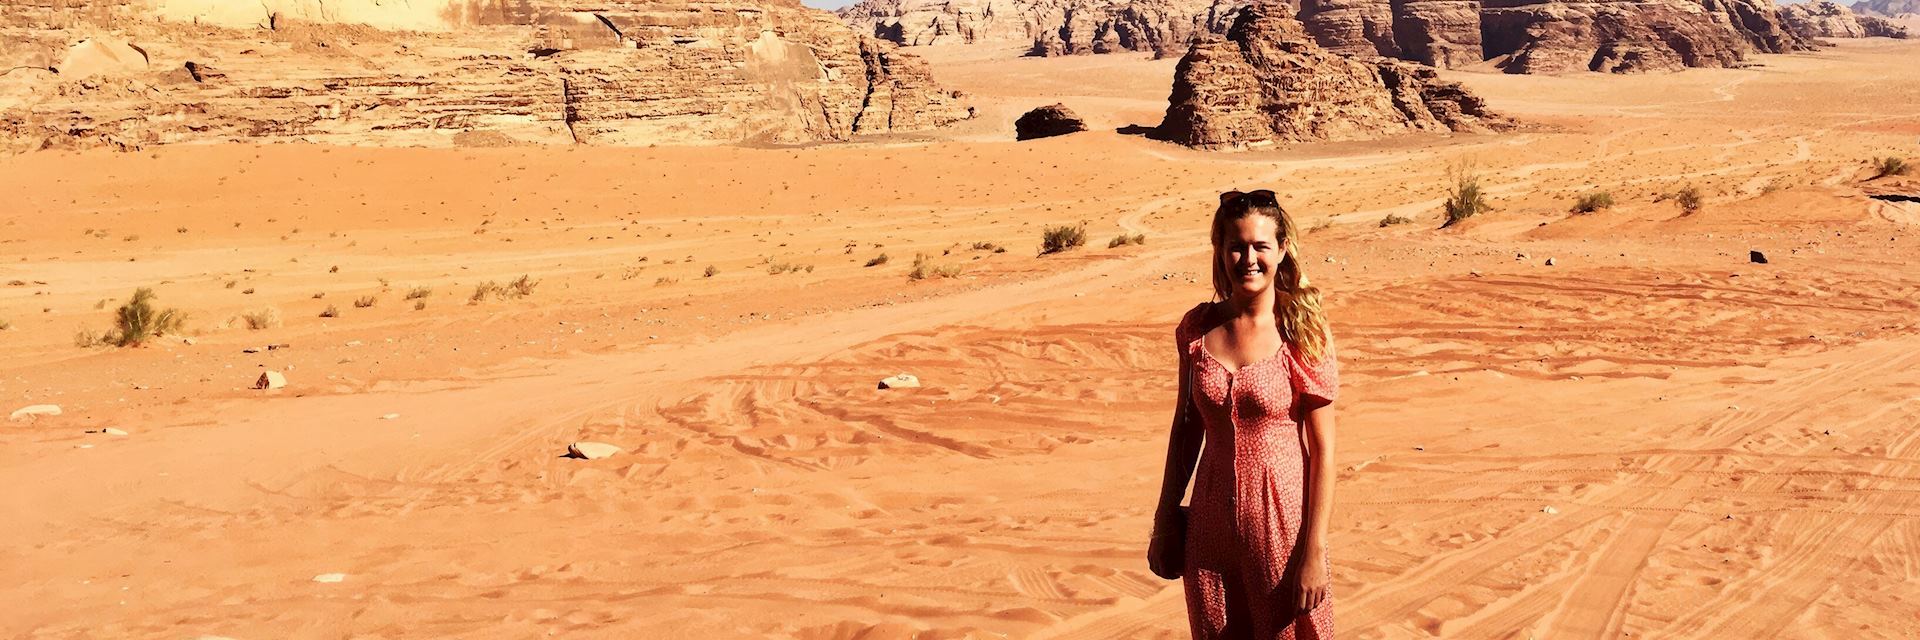 Sophie in Wadi Rum, Jordan